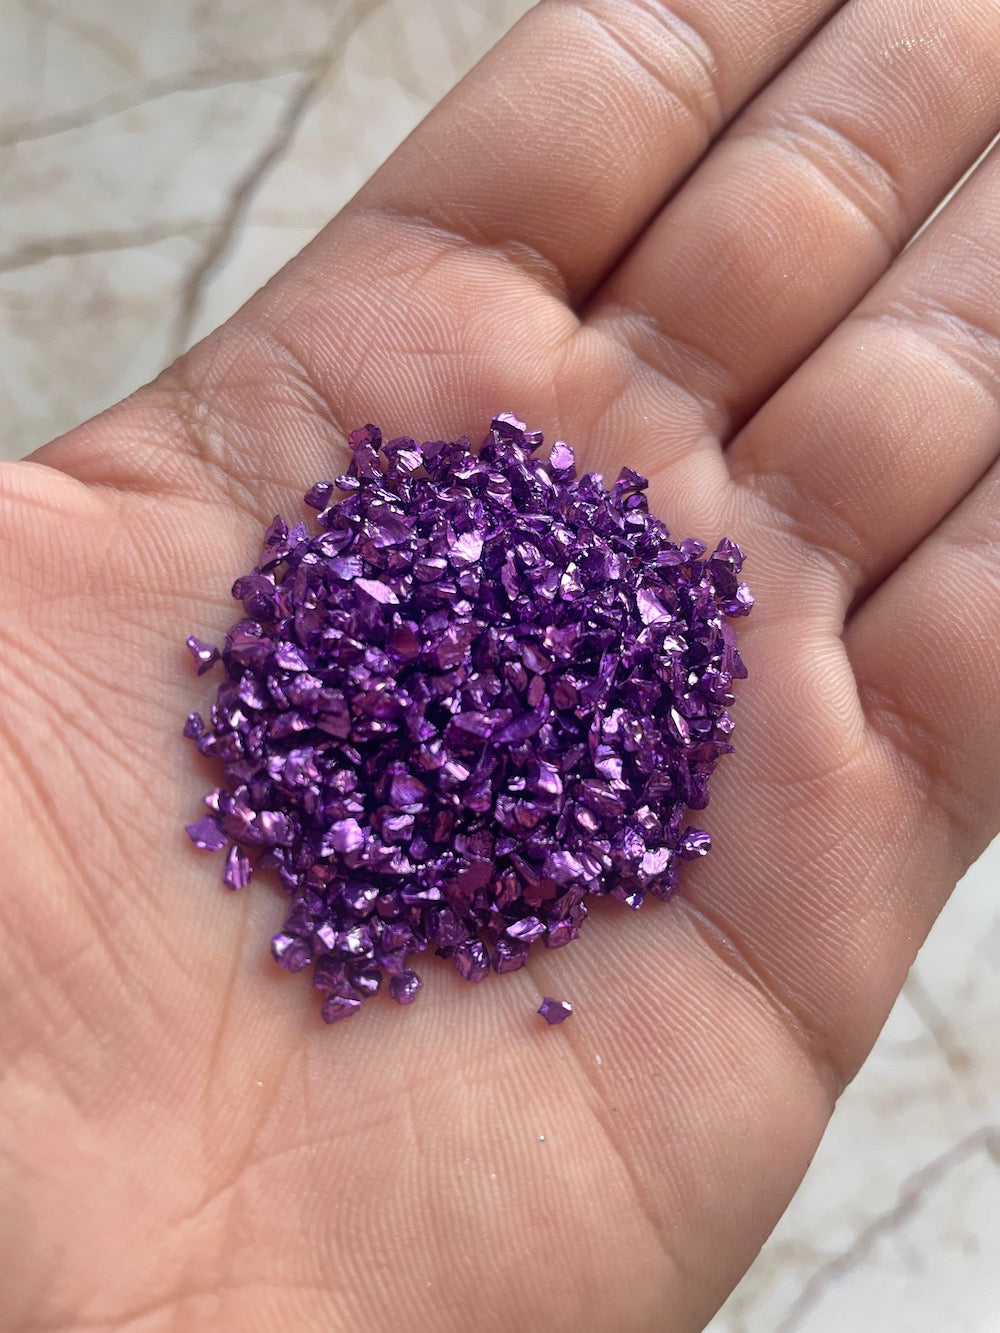 Violet Electroplated granules